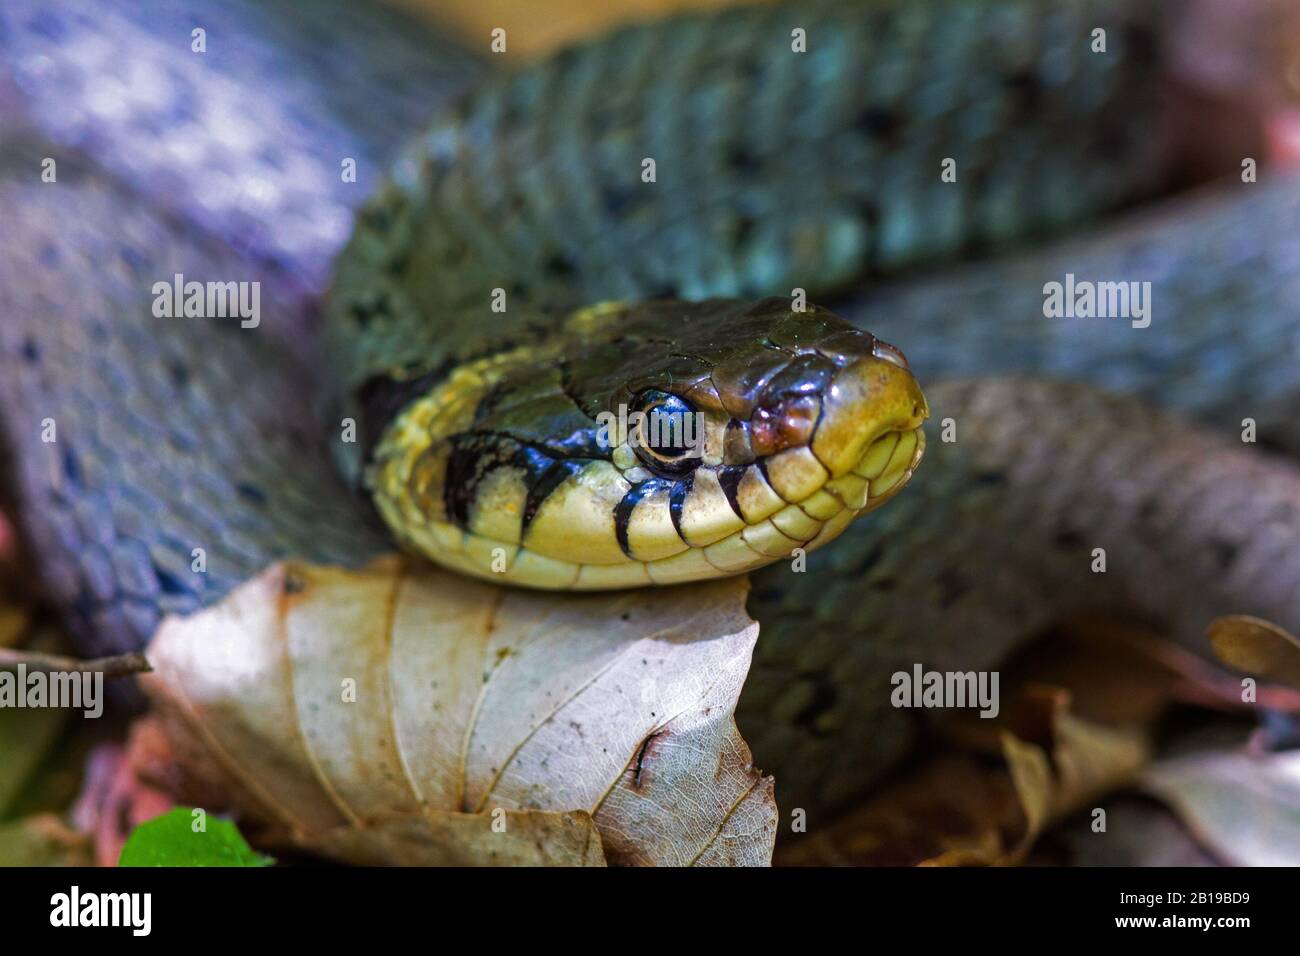 grass snake (Natrix natrix), portrait, side glance, Germany, Baden-Wuerttemberg Stock Photo